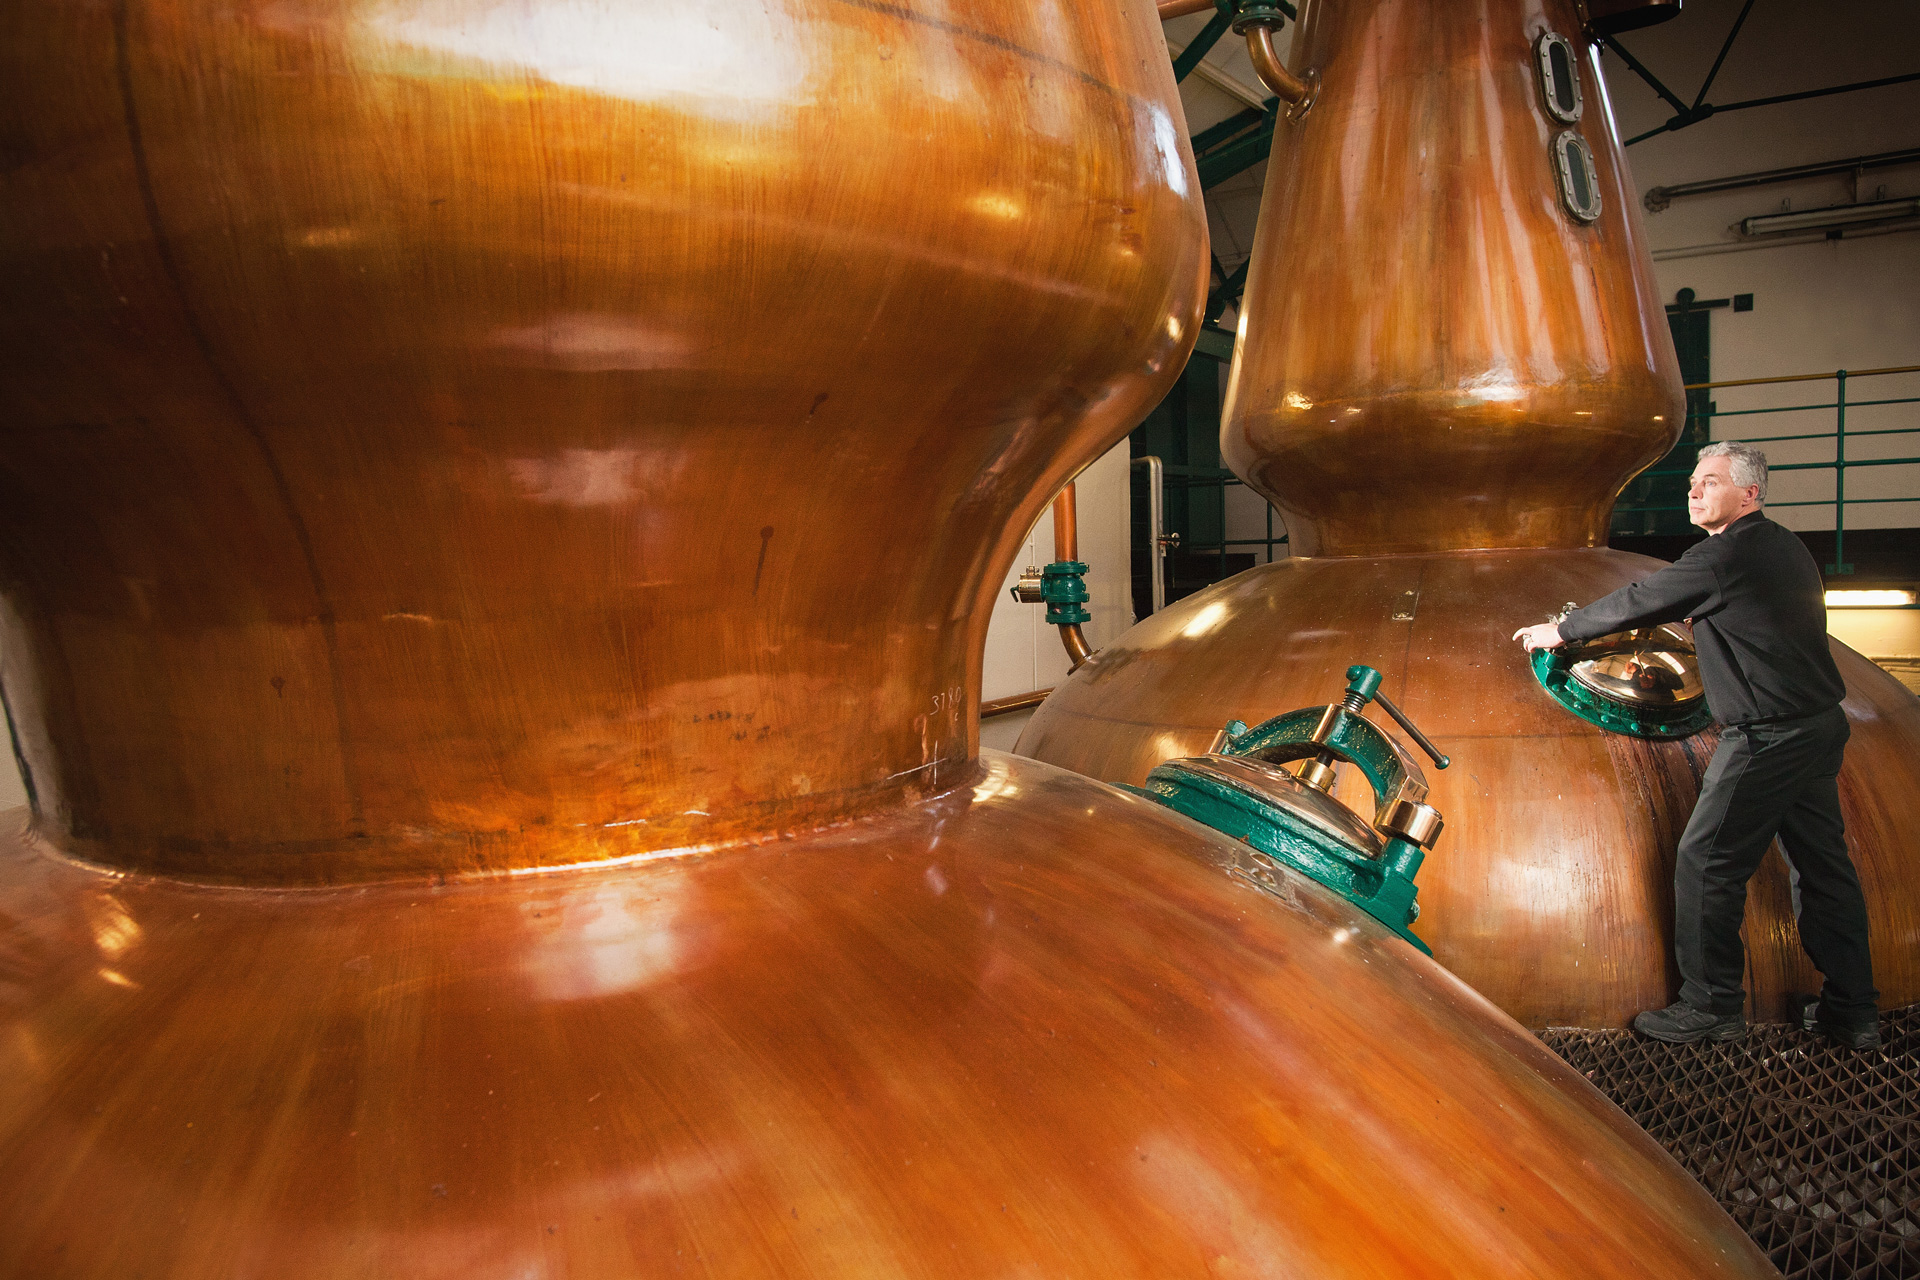 Des distillateurs innovants fabriquent des whiskies fumés (ne les appelez simplement pas «Scotch»), Devis couvreur